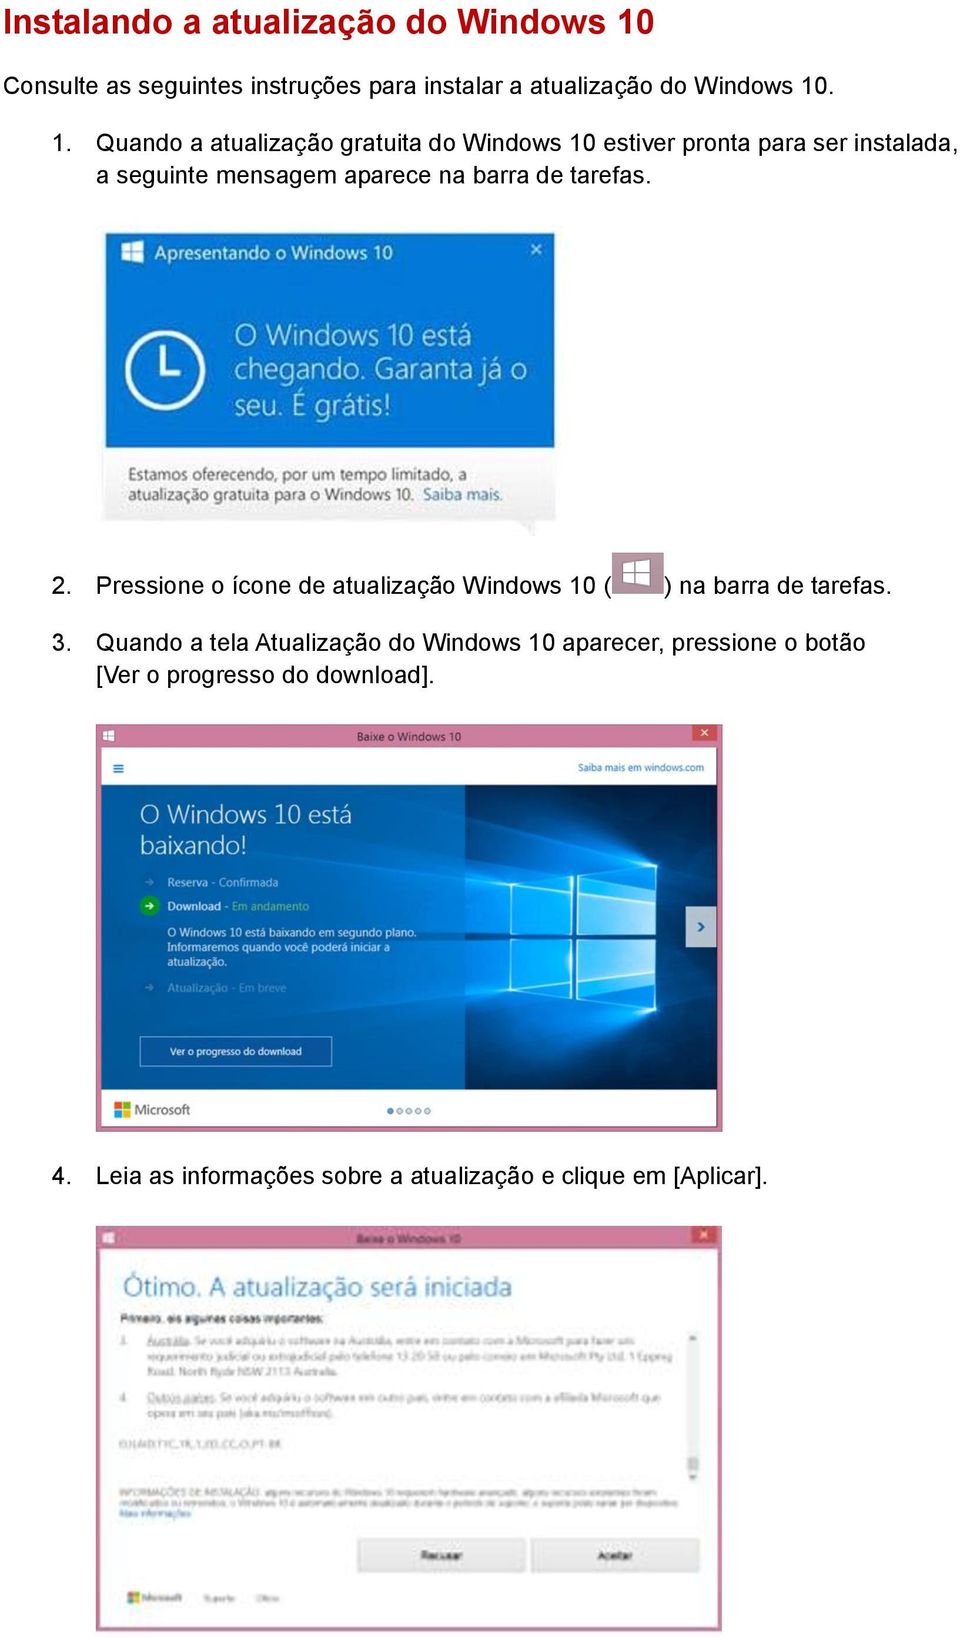 . 1. Quando a atualização gratuita do Windows 10 estiver pronta para ser instalada, a seguinte mensagem aparece na barra